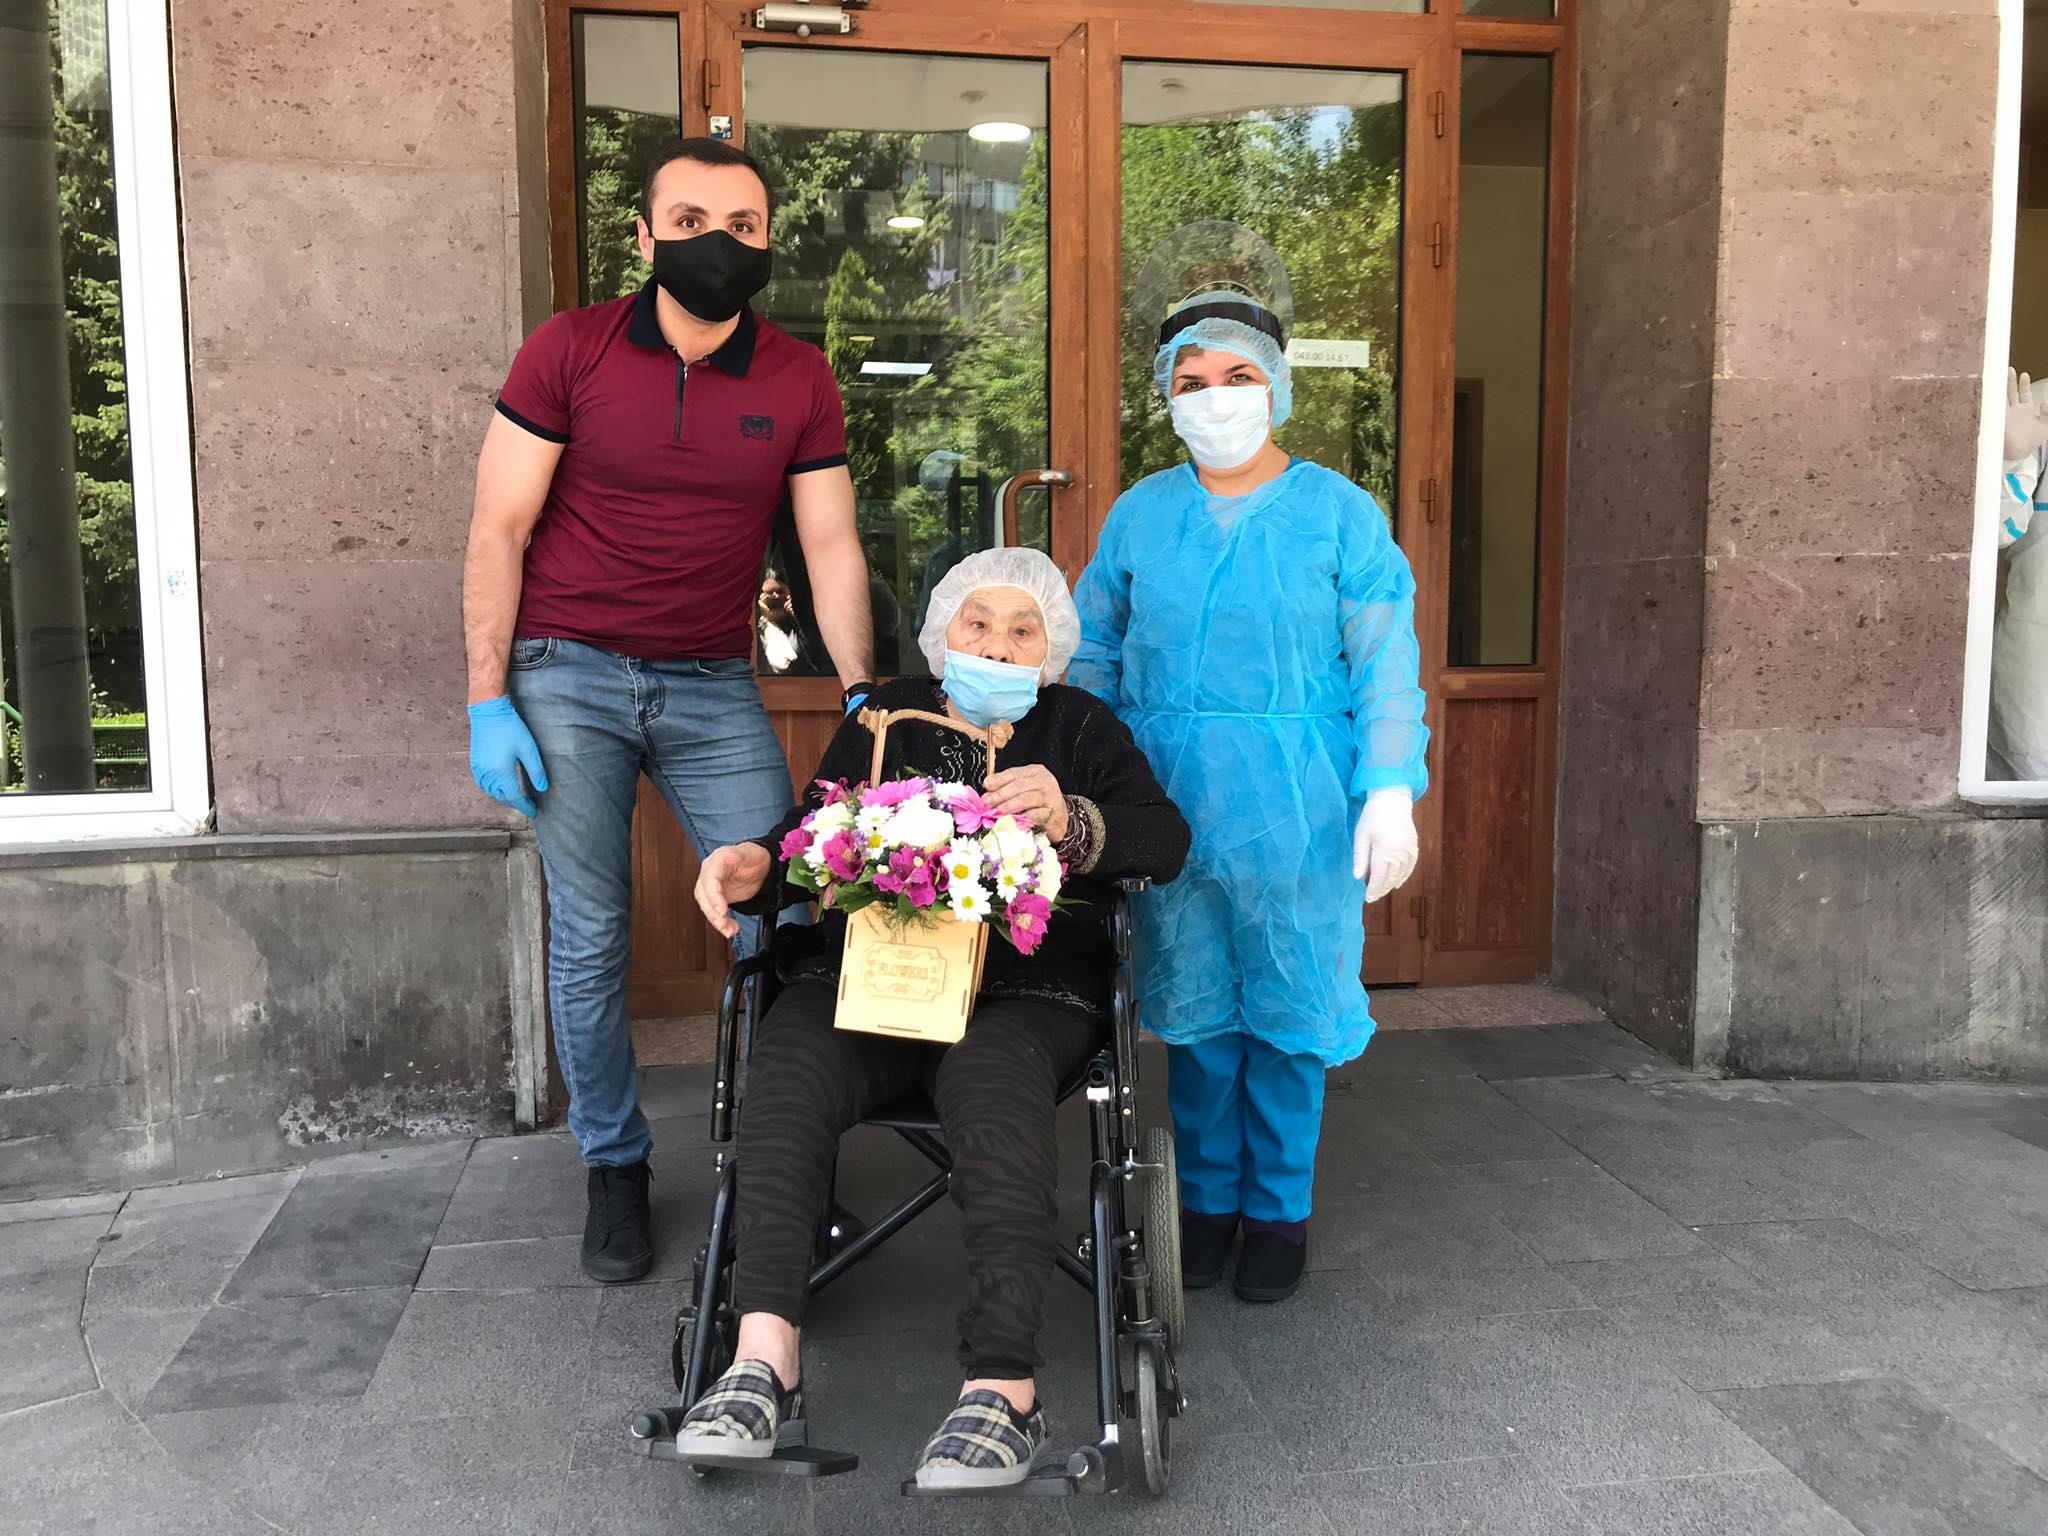 Լավ լուր․ 91-ամյա Սրբուհի Մուրադյանը բուժվել է կորոնավիրուսից և դուրս գրվել հիվանդանոցից